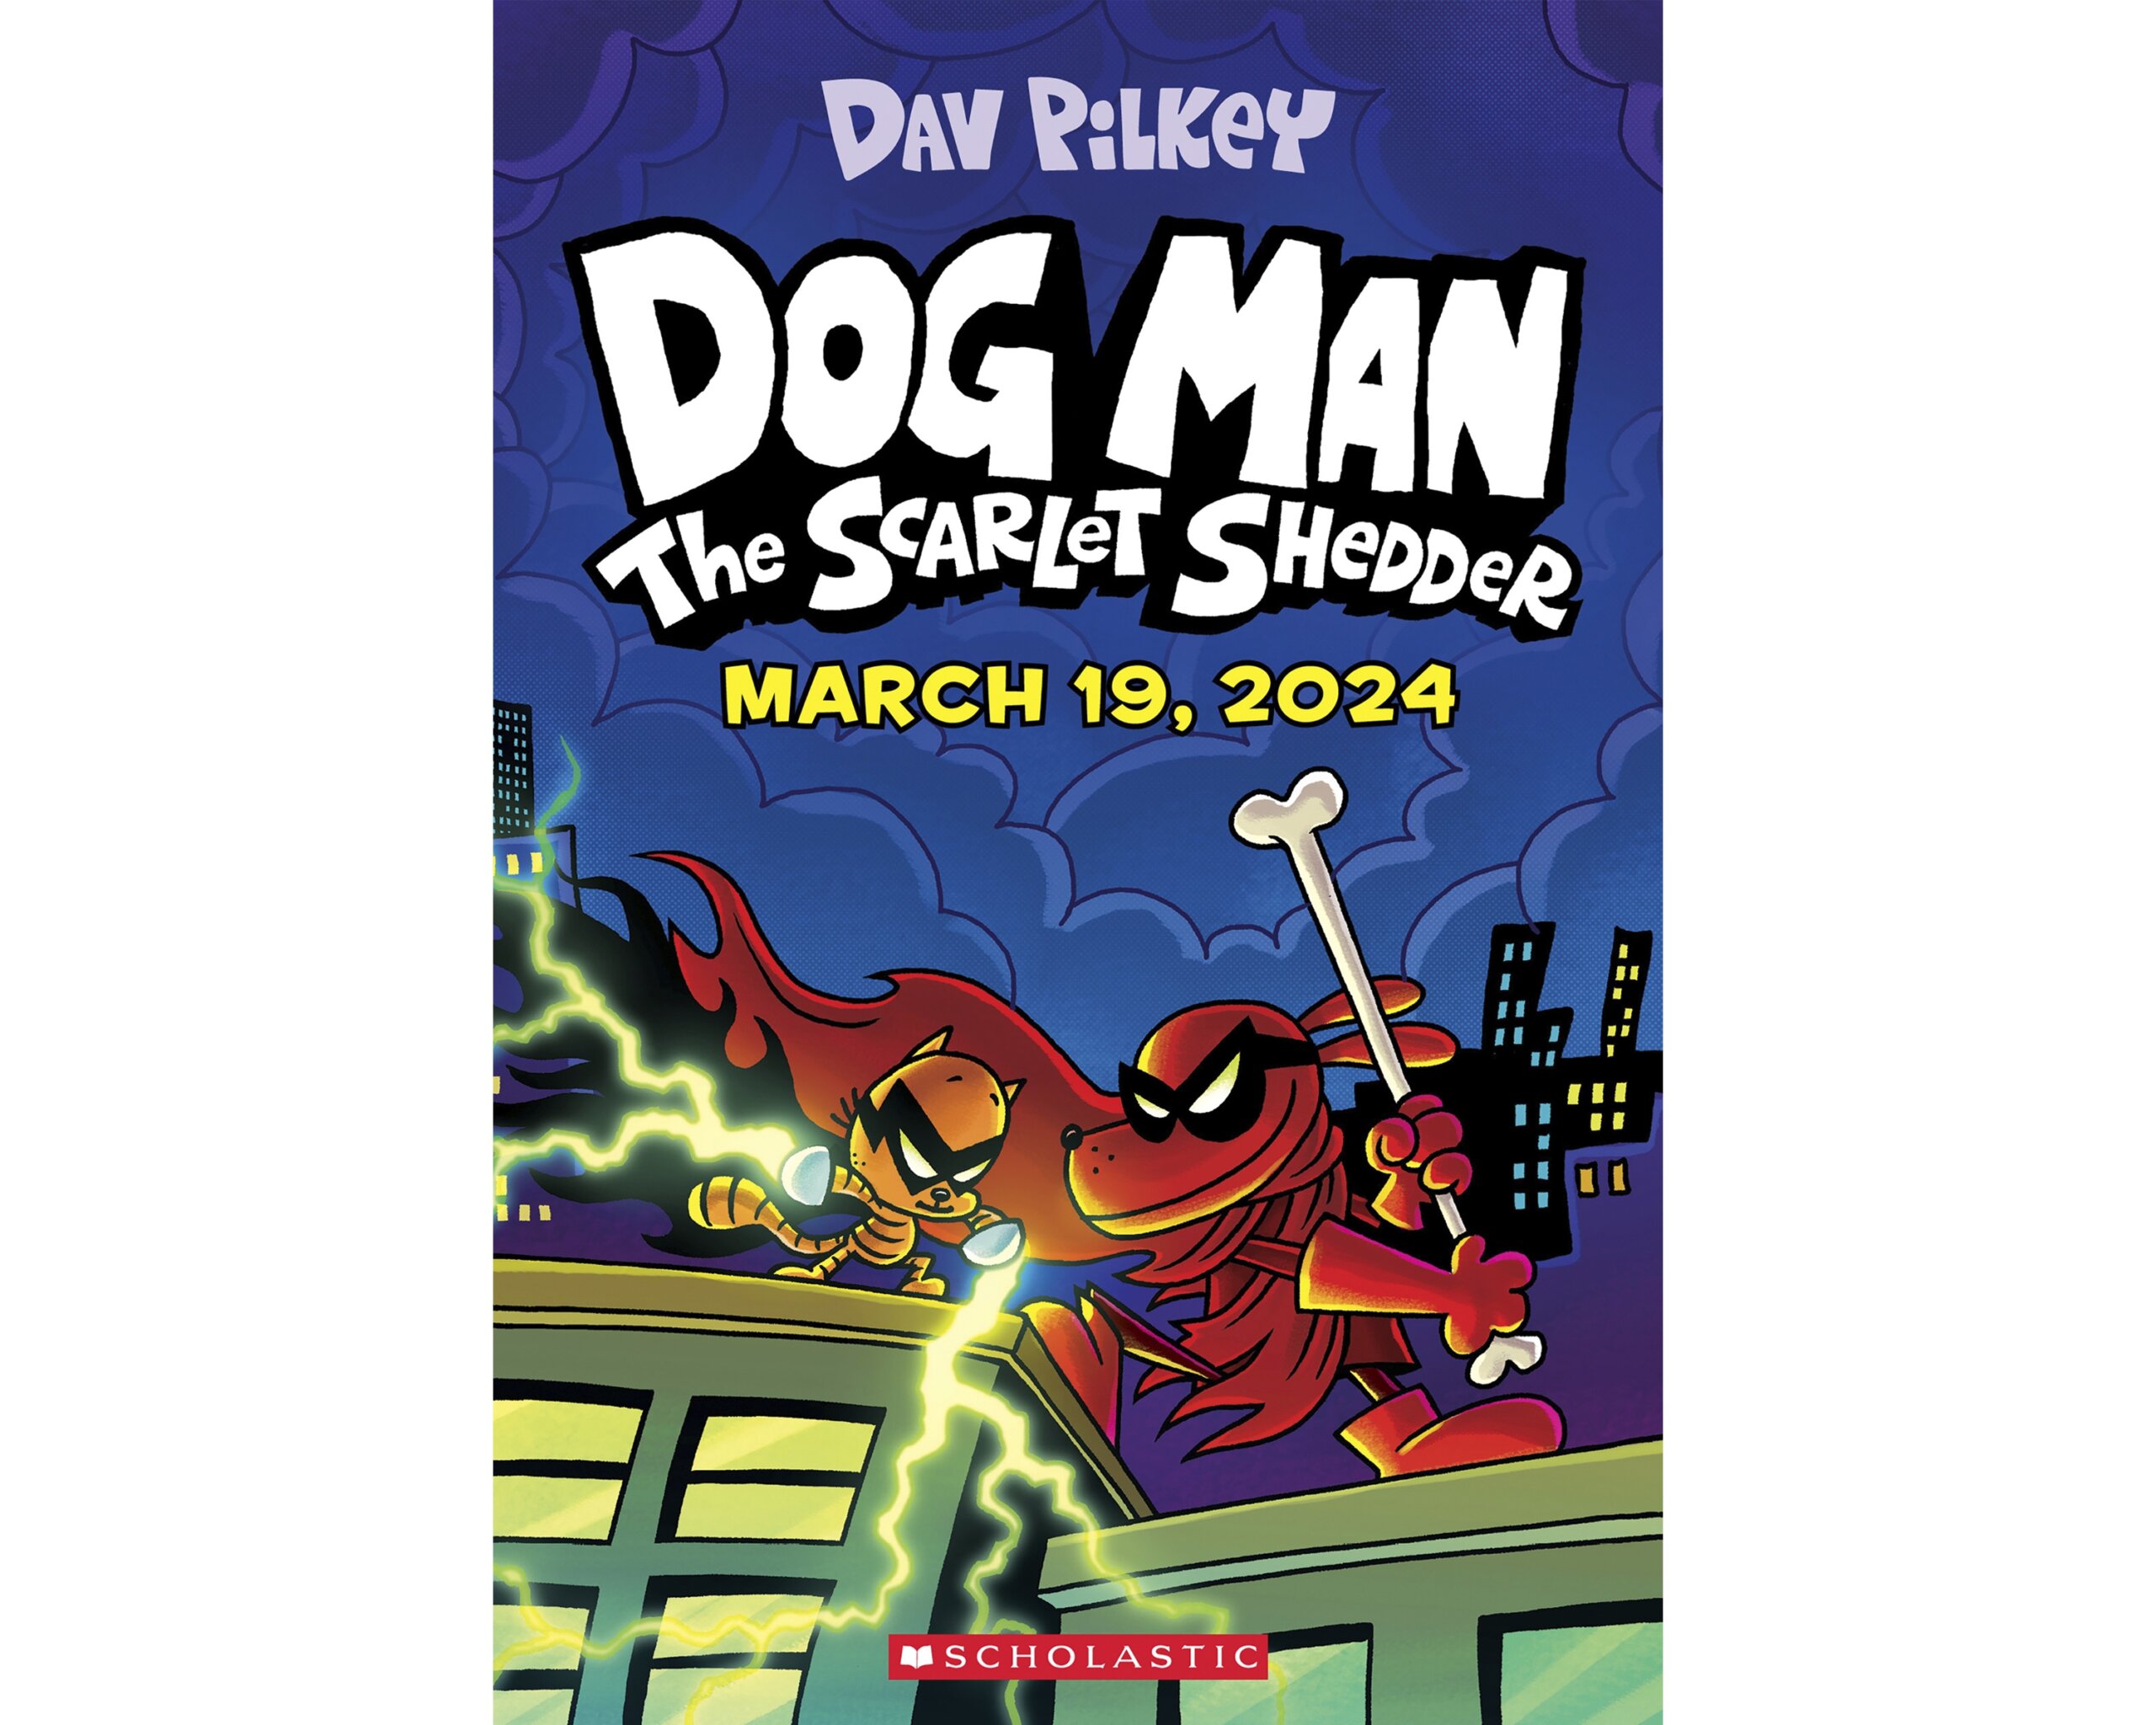 children-s-author-dav-pilkey-has-shameless-title-for-next-dog-man